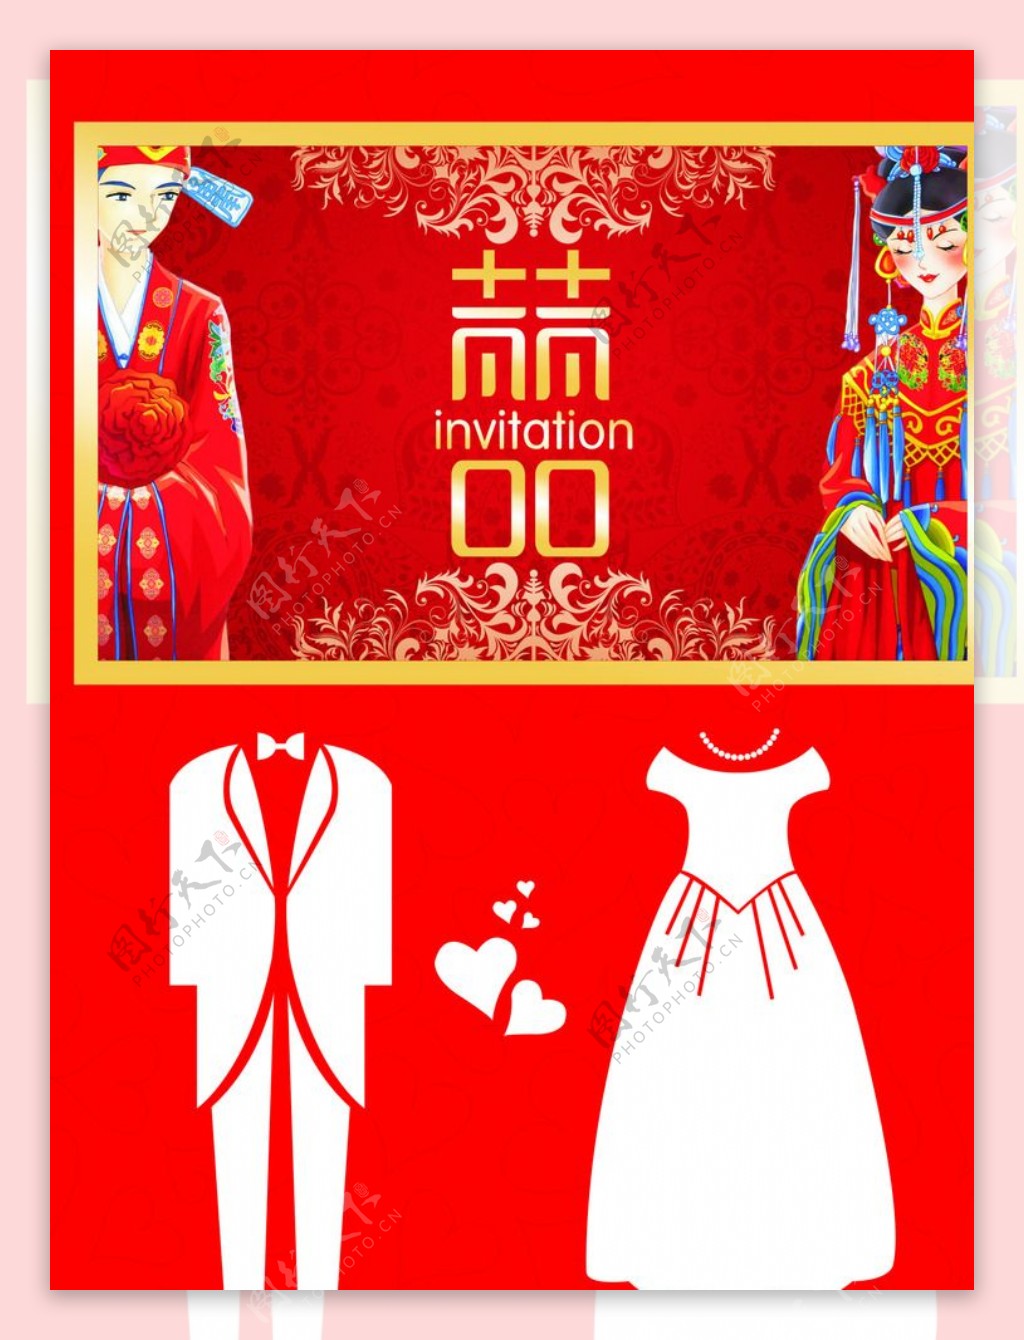 中式婚庆背景挂画图片